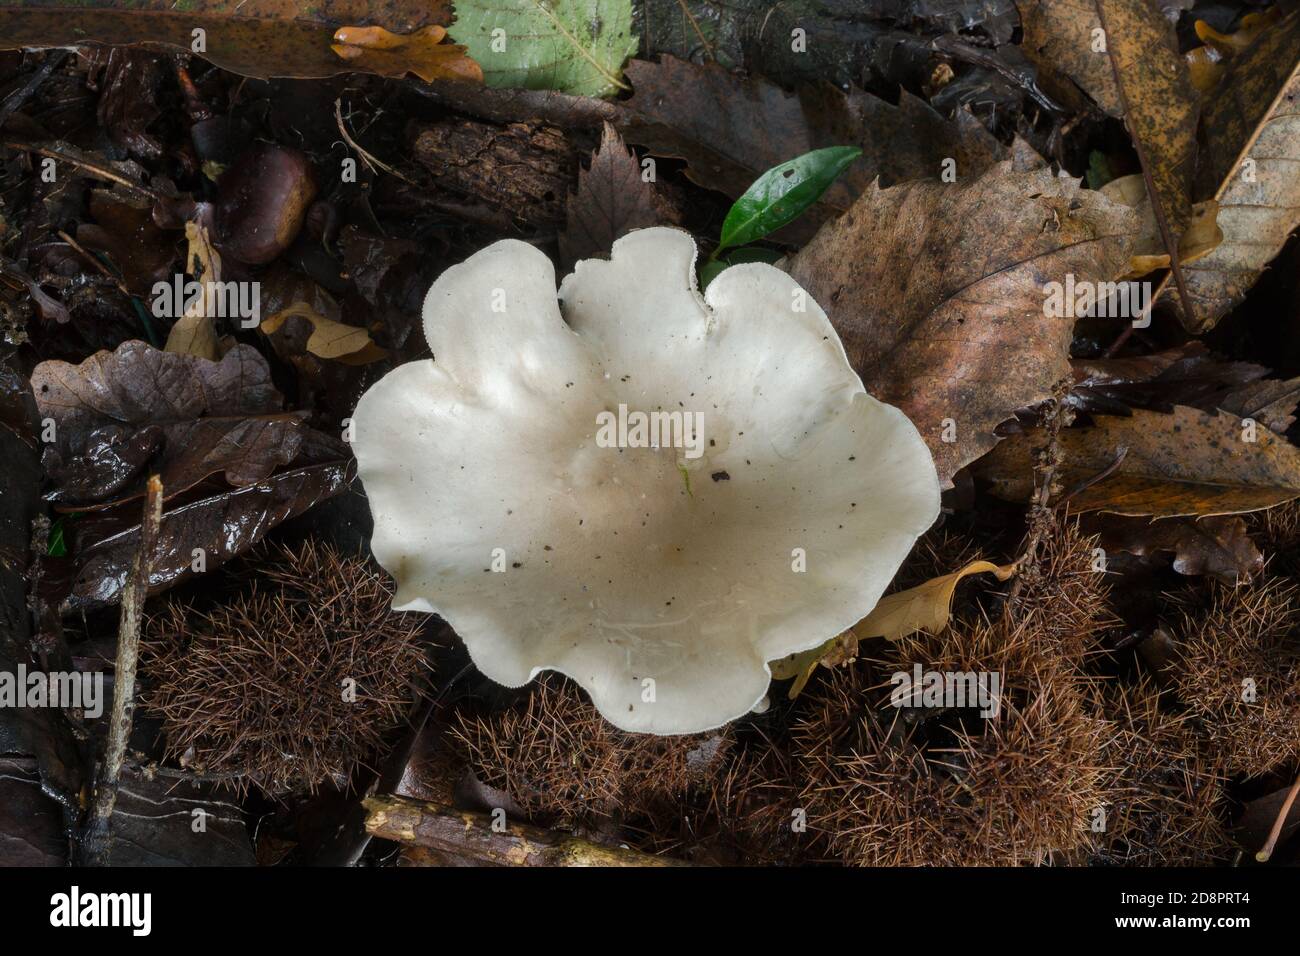 Il fungo del clitopilus prunulus che cresce accanto ad alcuni rami decadenti in boschi autunnali. Foto Stock